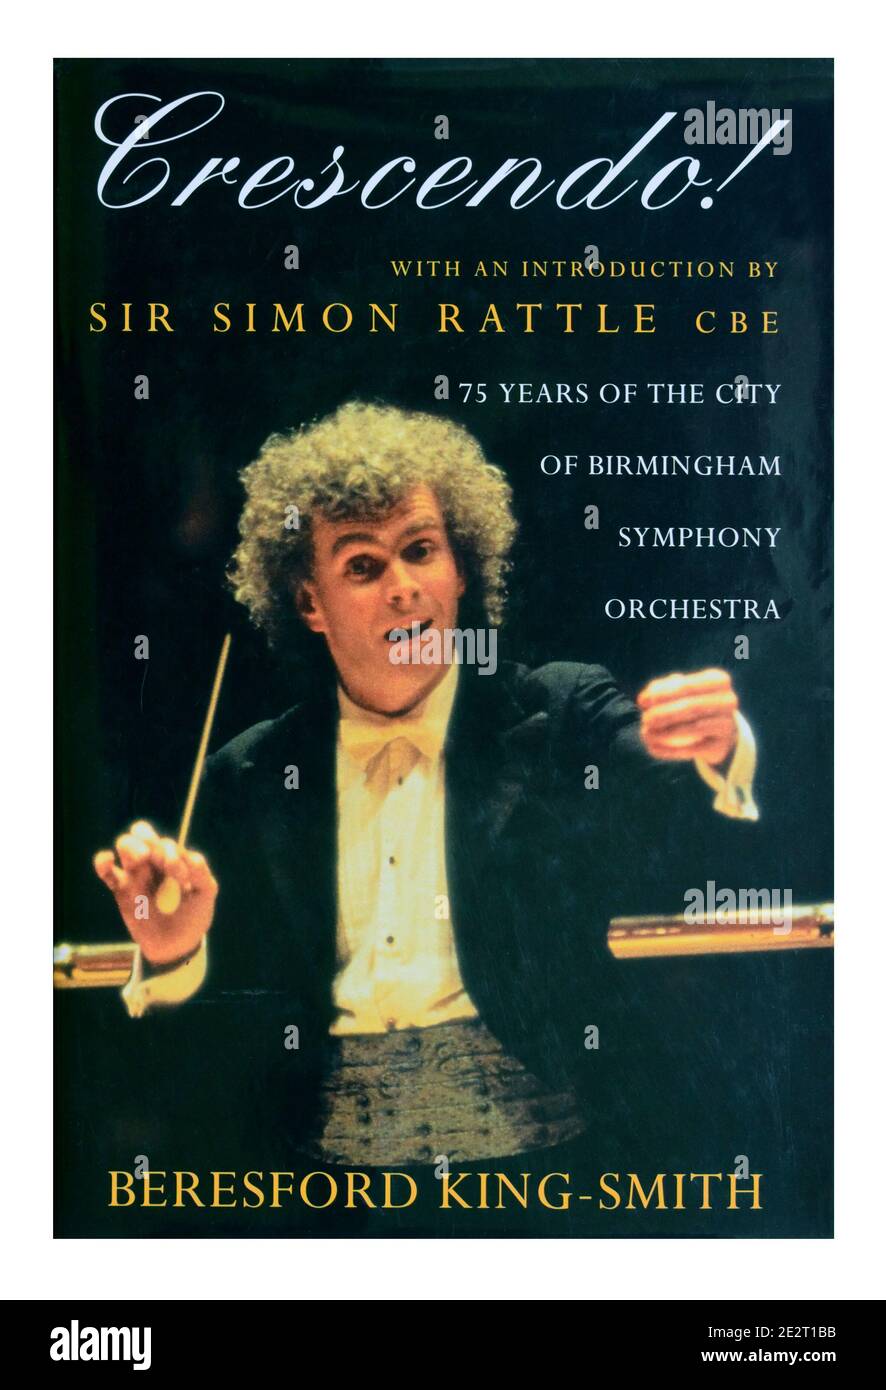 Copertina del libro "Crescendo, 75 anni della City of Birmingham Symphony Orchestra" di Beresford King-Smith. Foto Stock